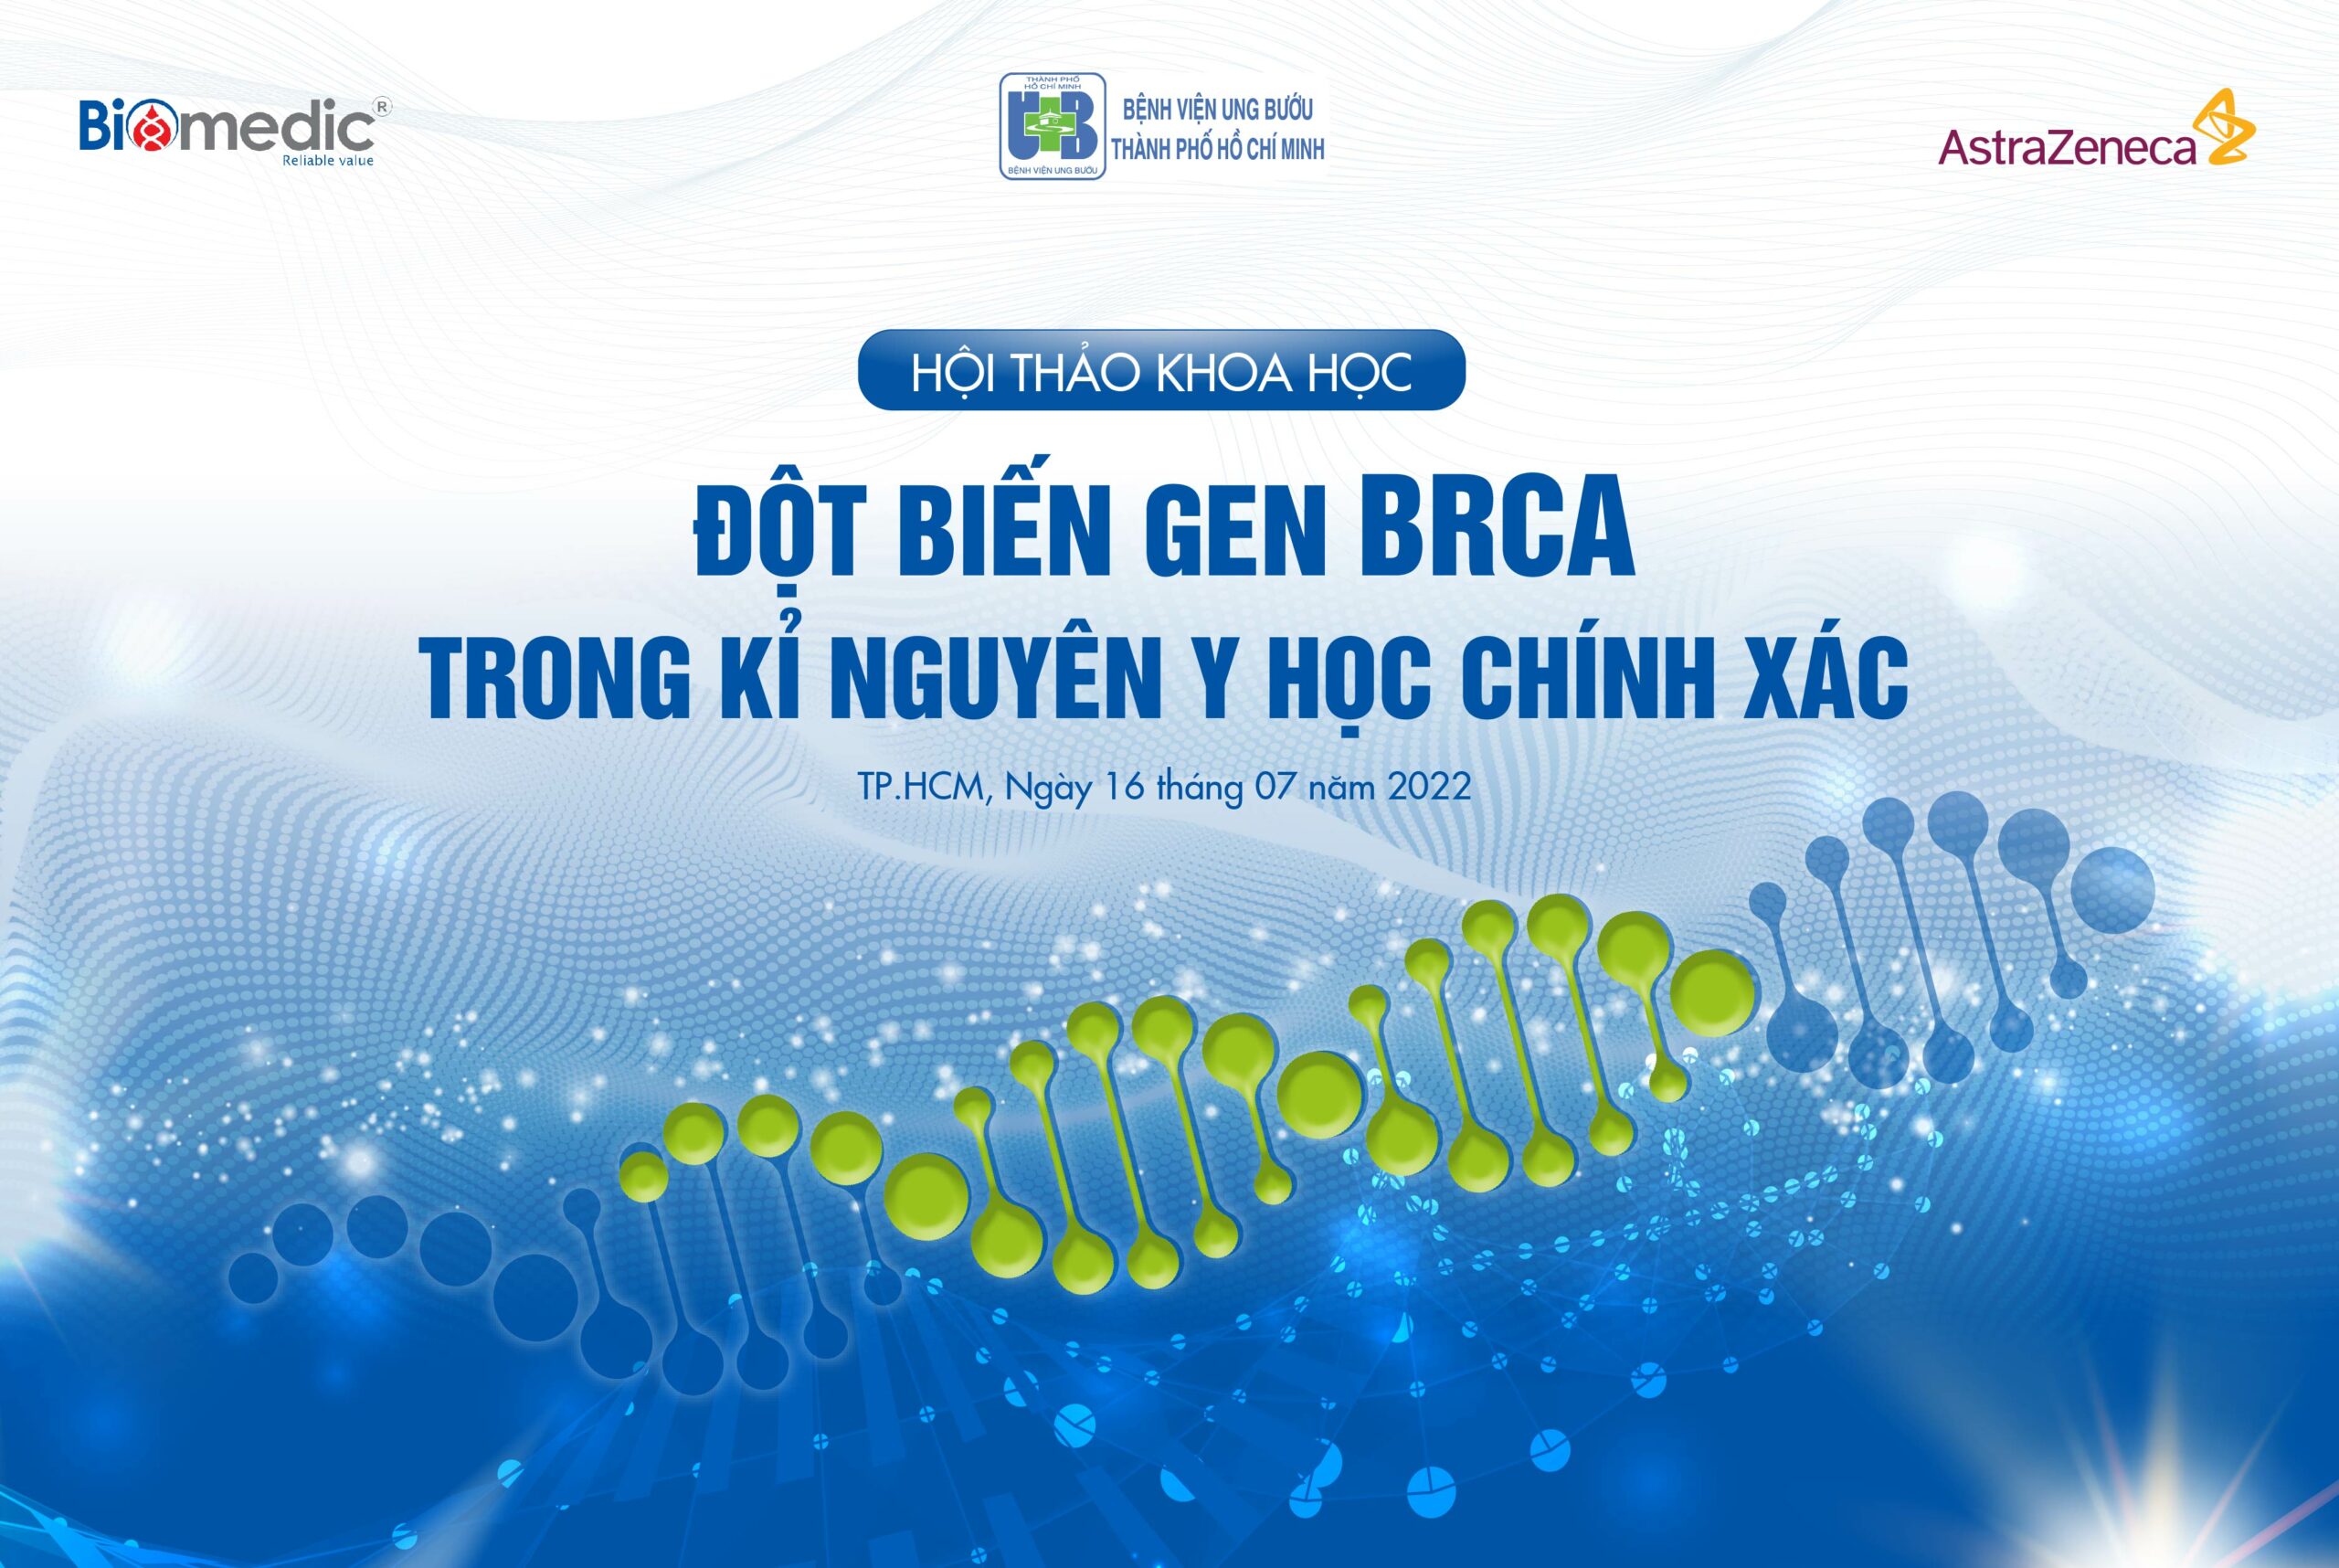 Biomedic đồng hành cùng bệnh viện ung bướu TP. Hồ Chí Minh tổ chức Hội thảo khoa học “Đột biến gen BRCA trong kỷ nguyên y học chính xác”